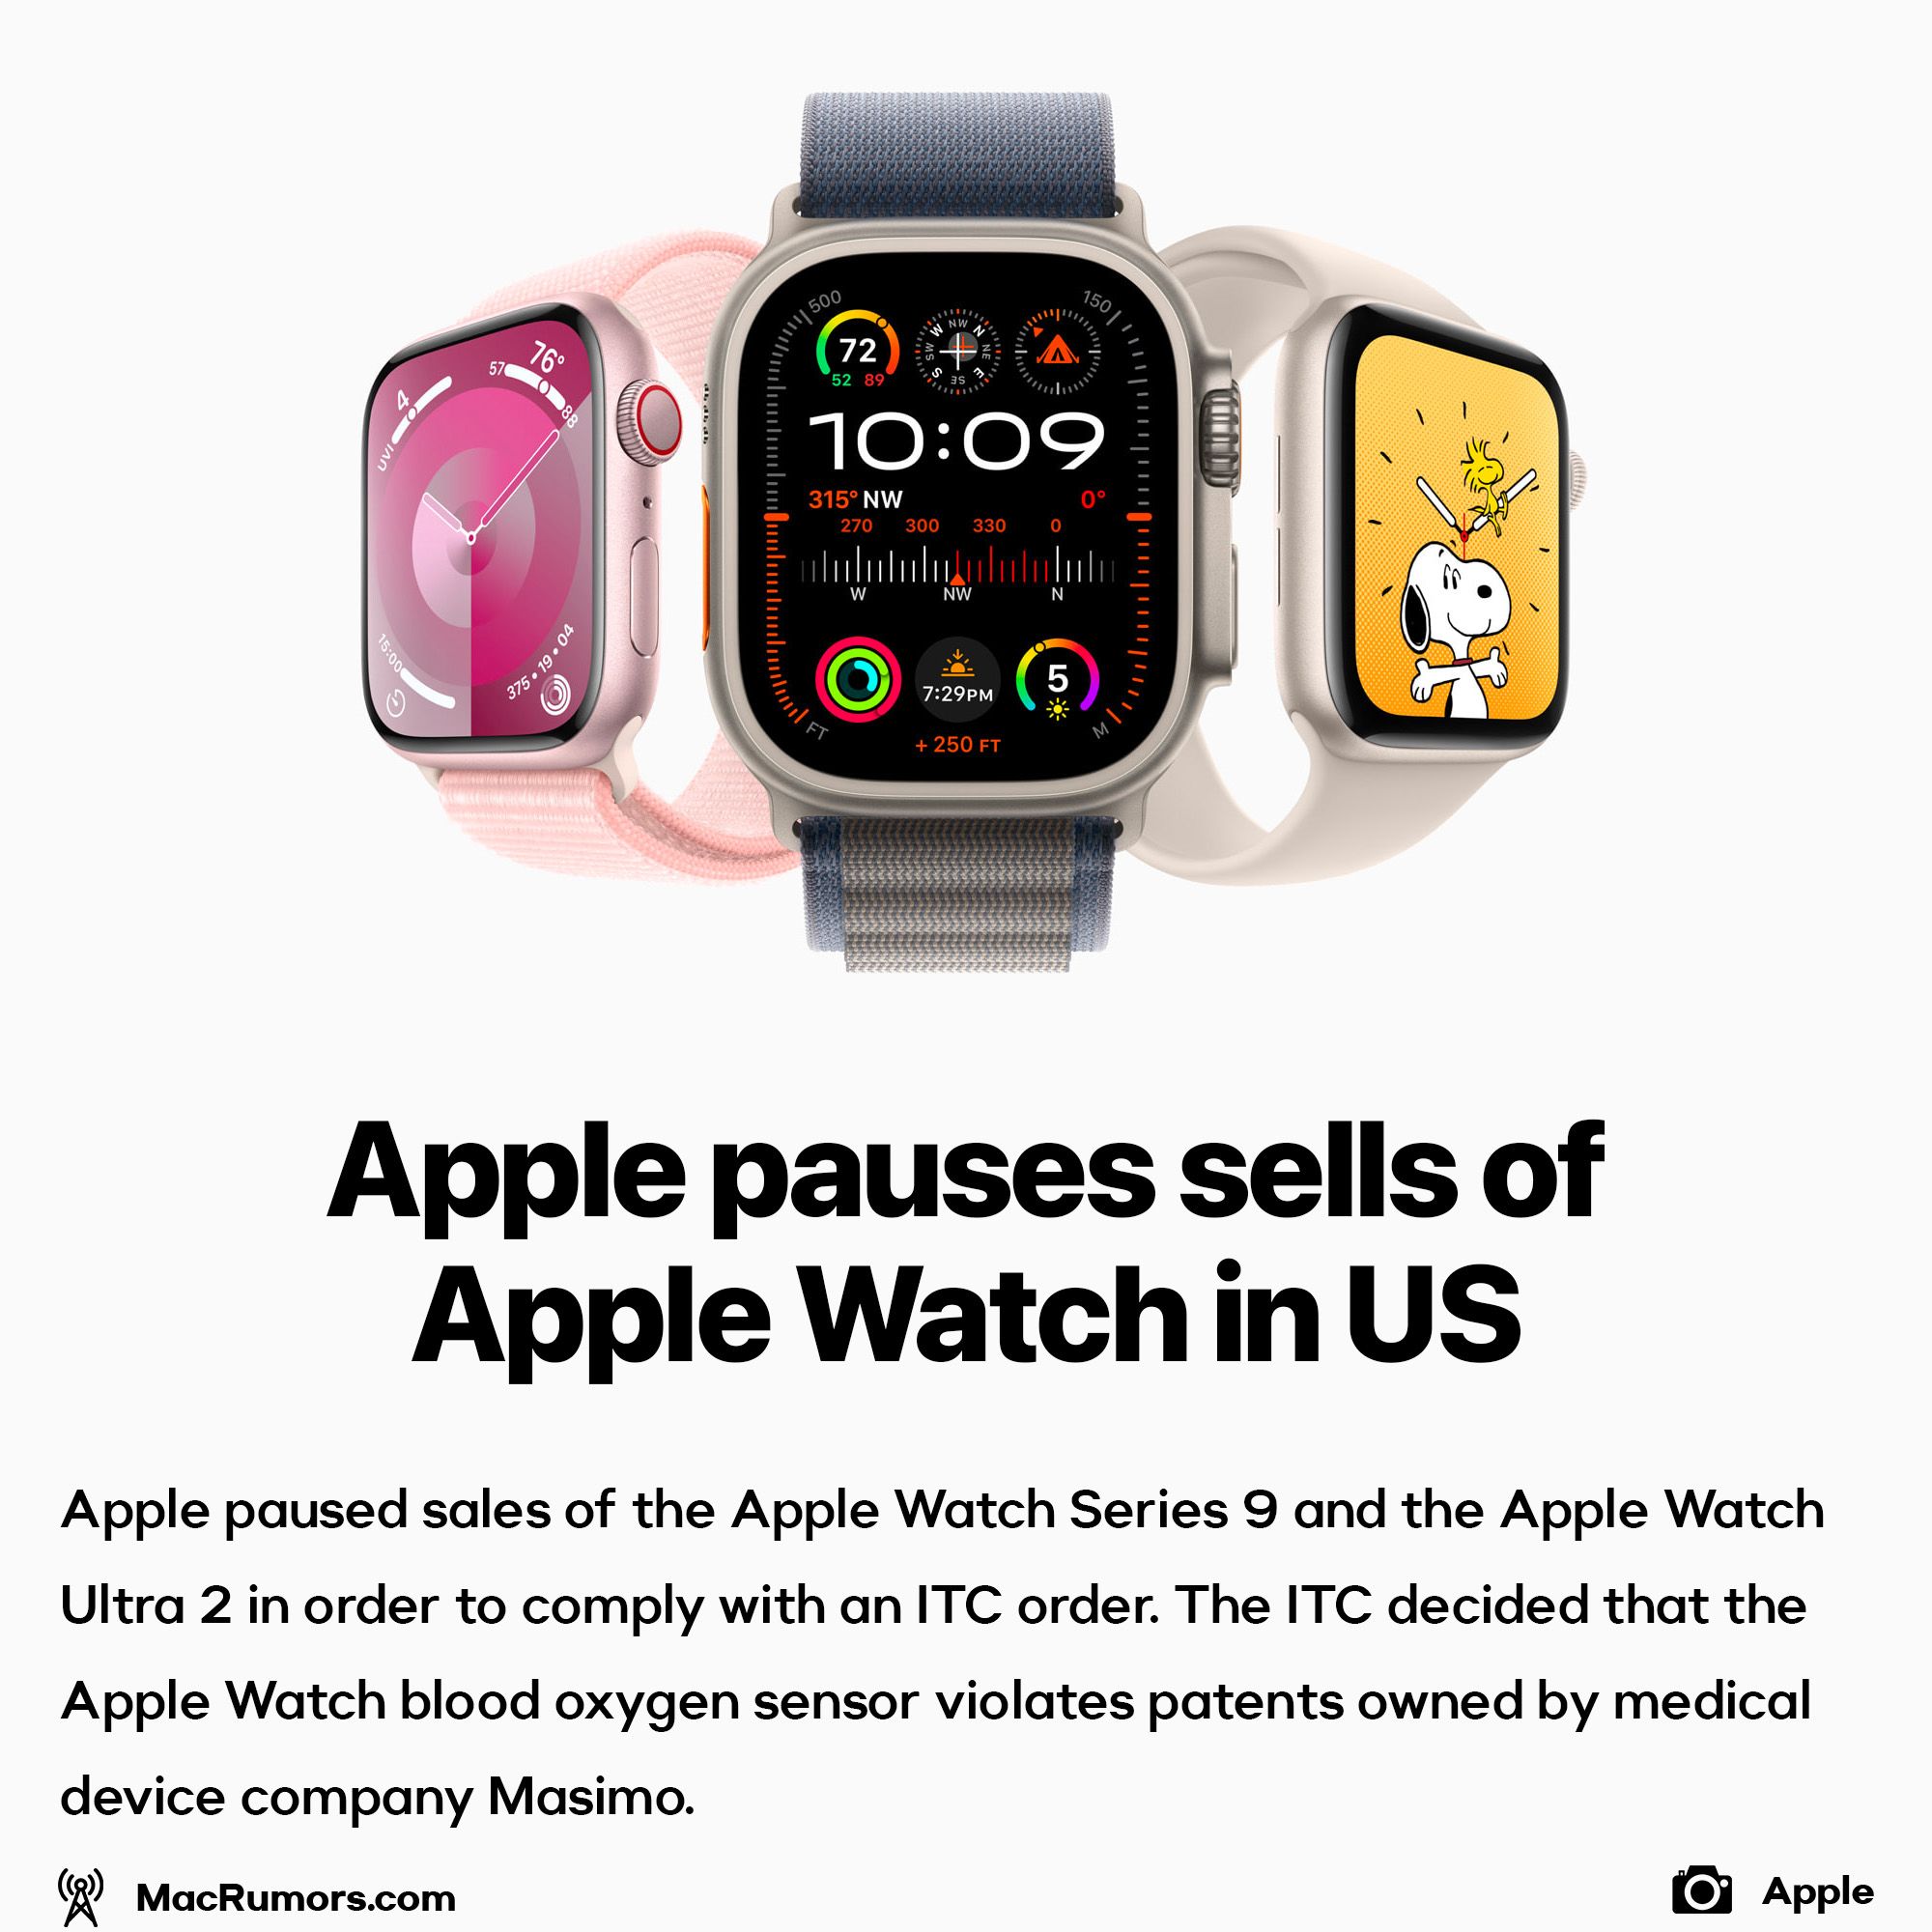 Apple pauses sells of Apple Watch in US